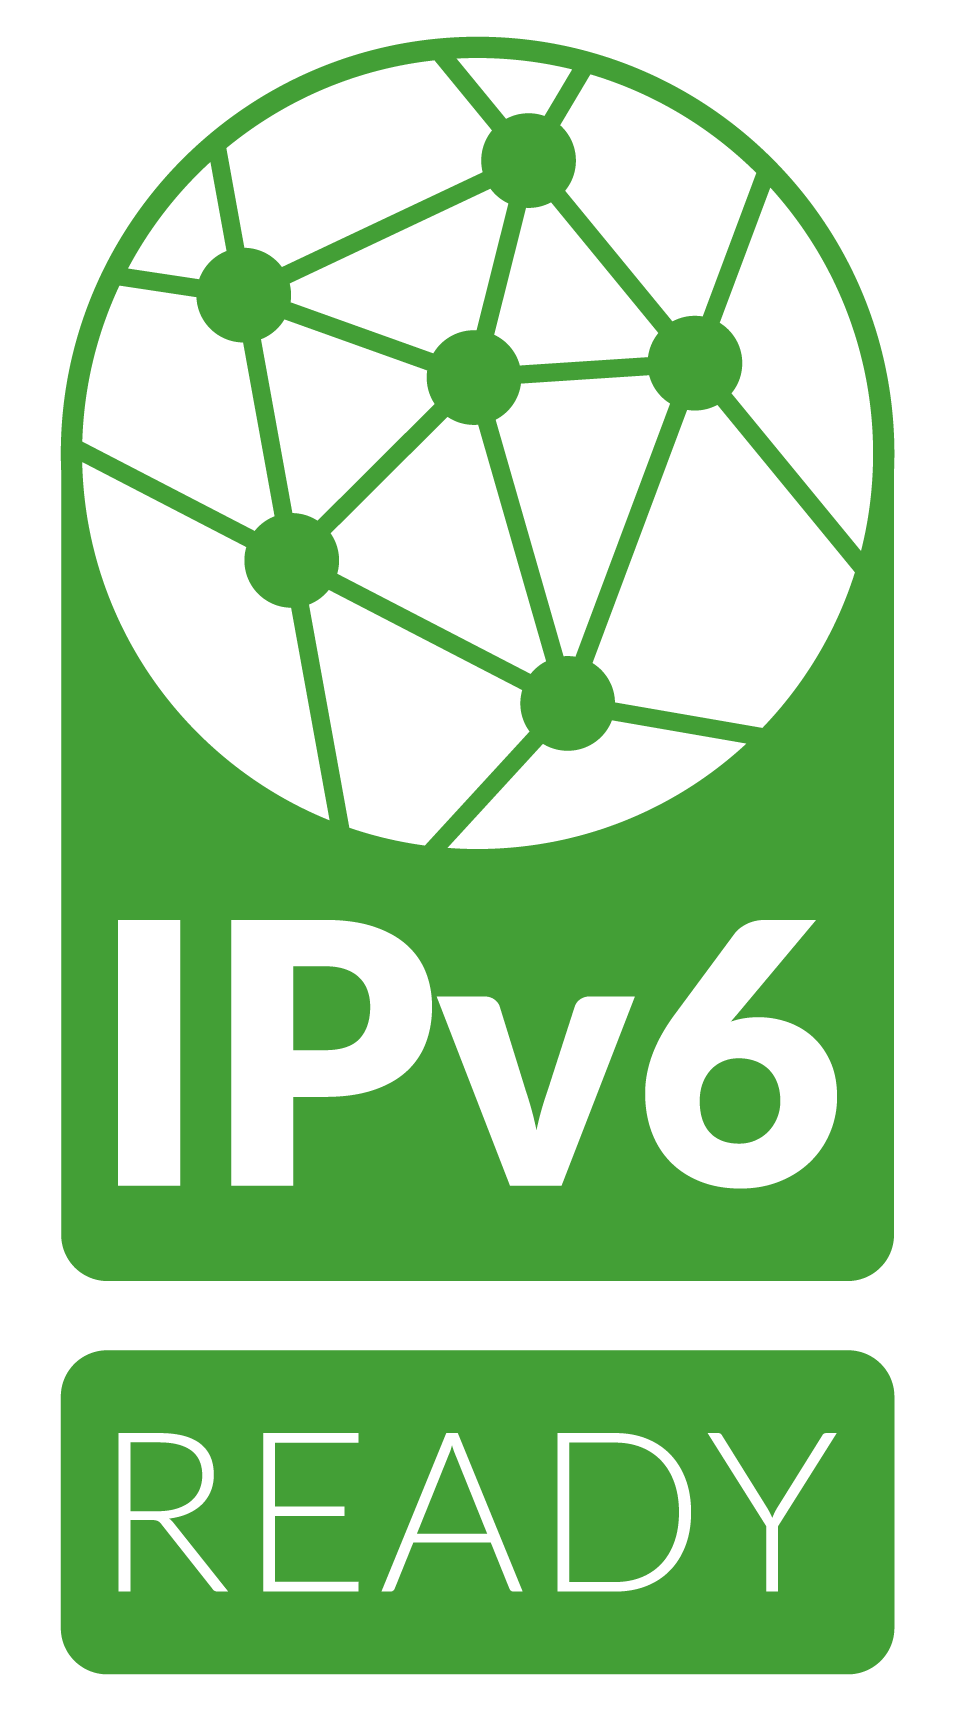 IPv6 READY